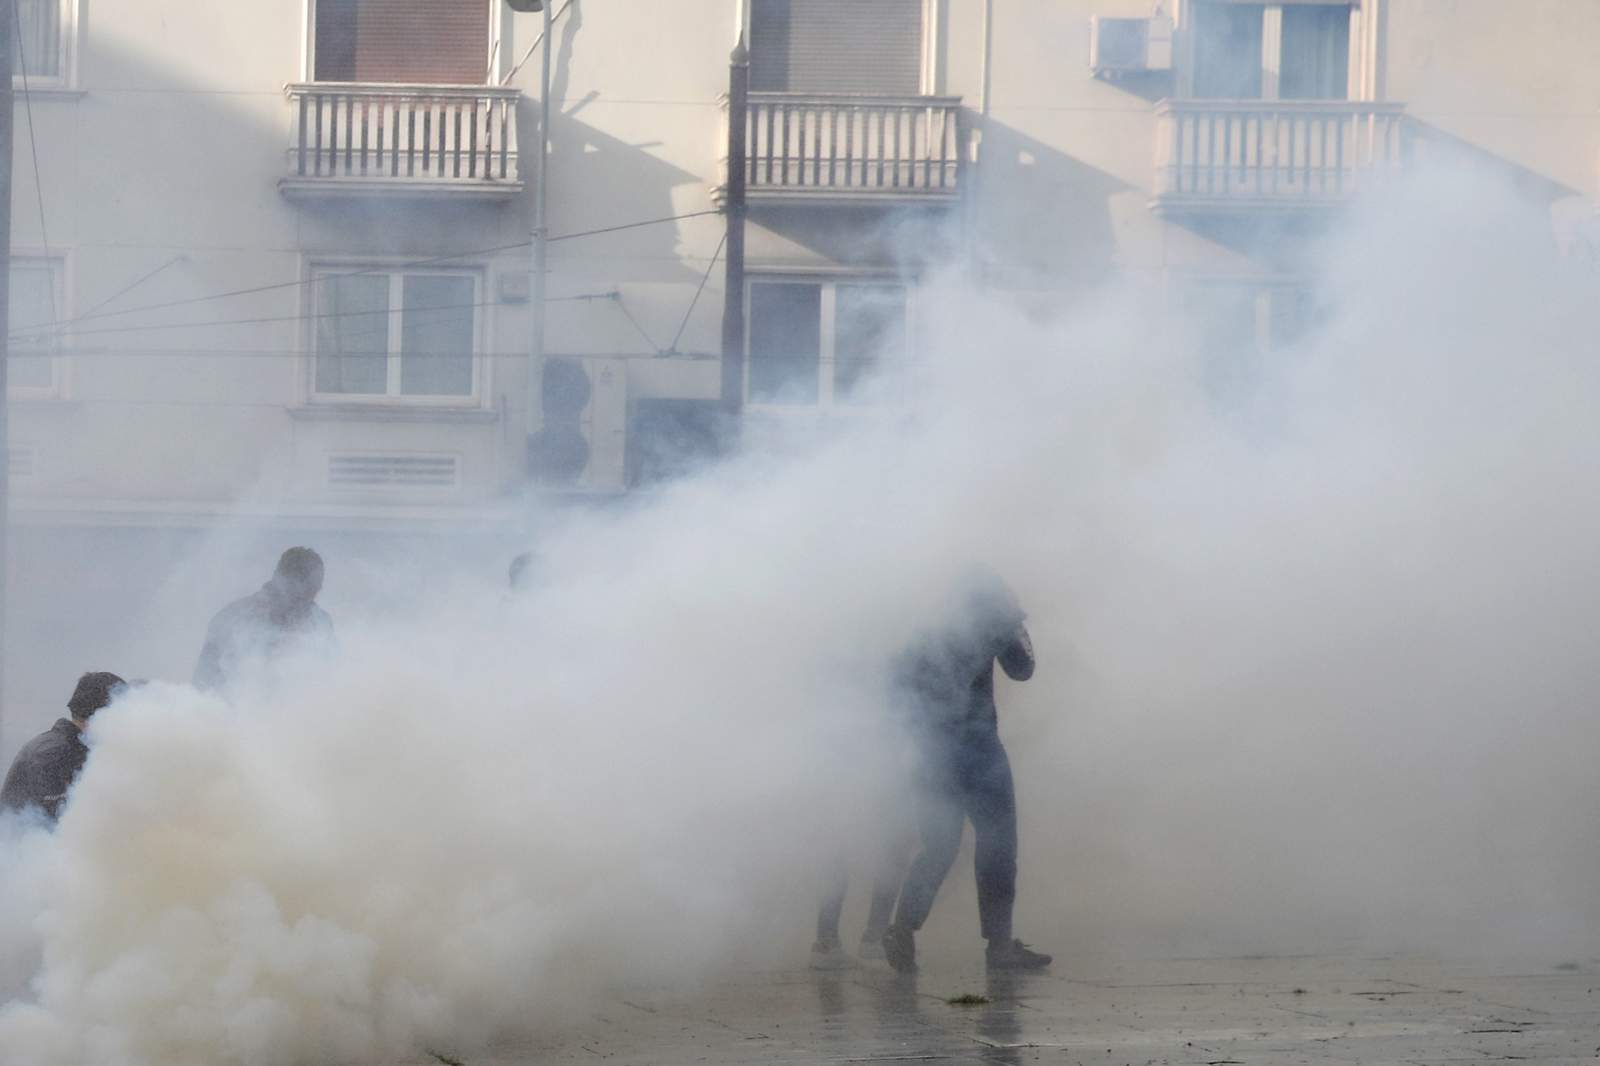 Police fire tear gas to break up banned gatherings in Greece